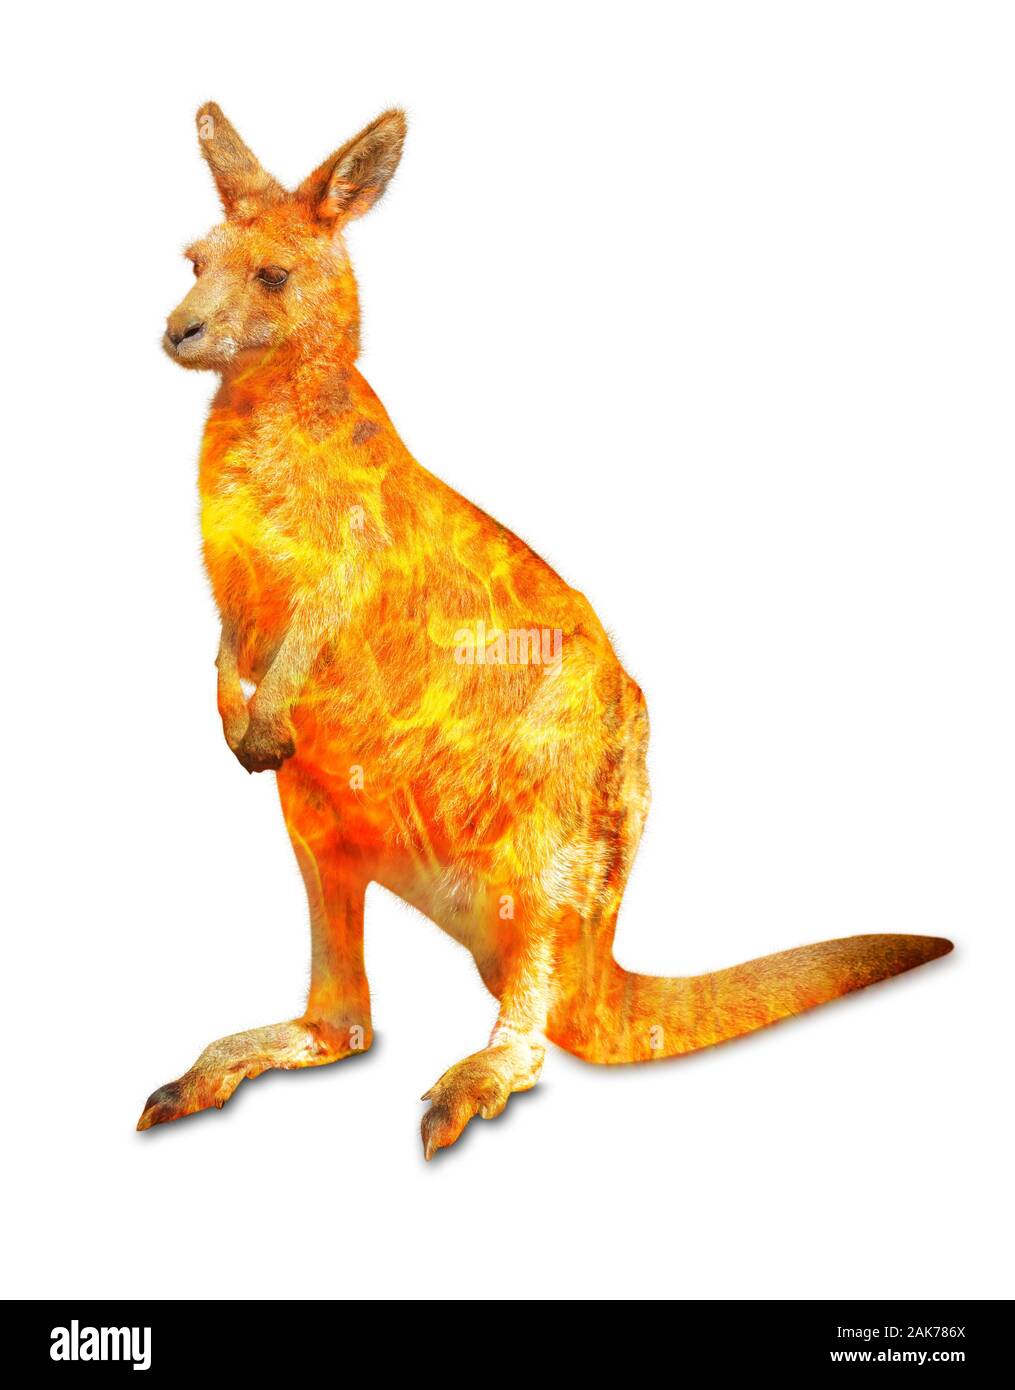 À propos de la composition de la faune kangourou dans la brousse australienne en 2020. Kangourou permanent avec le feu isolé sur fond blanc. Macropus rufus Banque D'Images